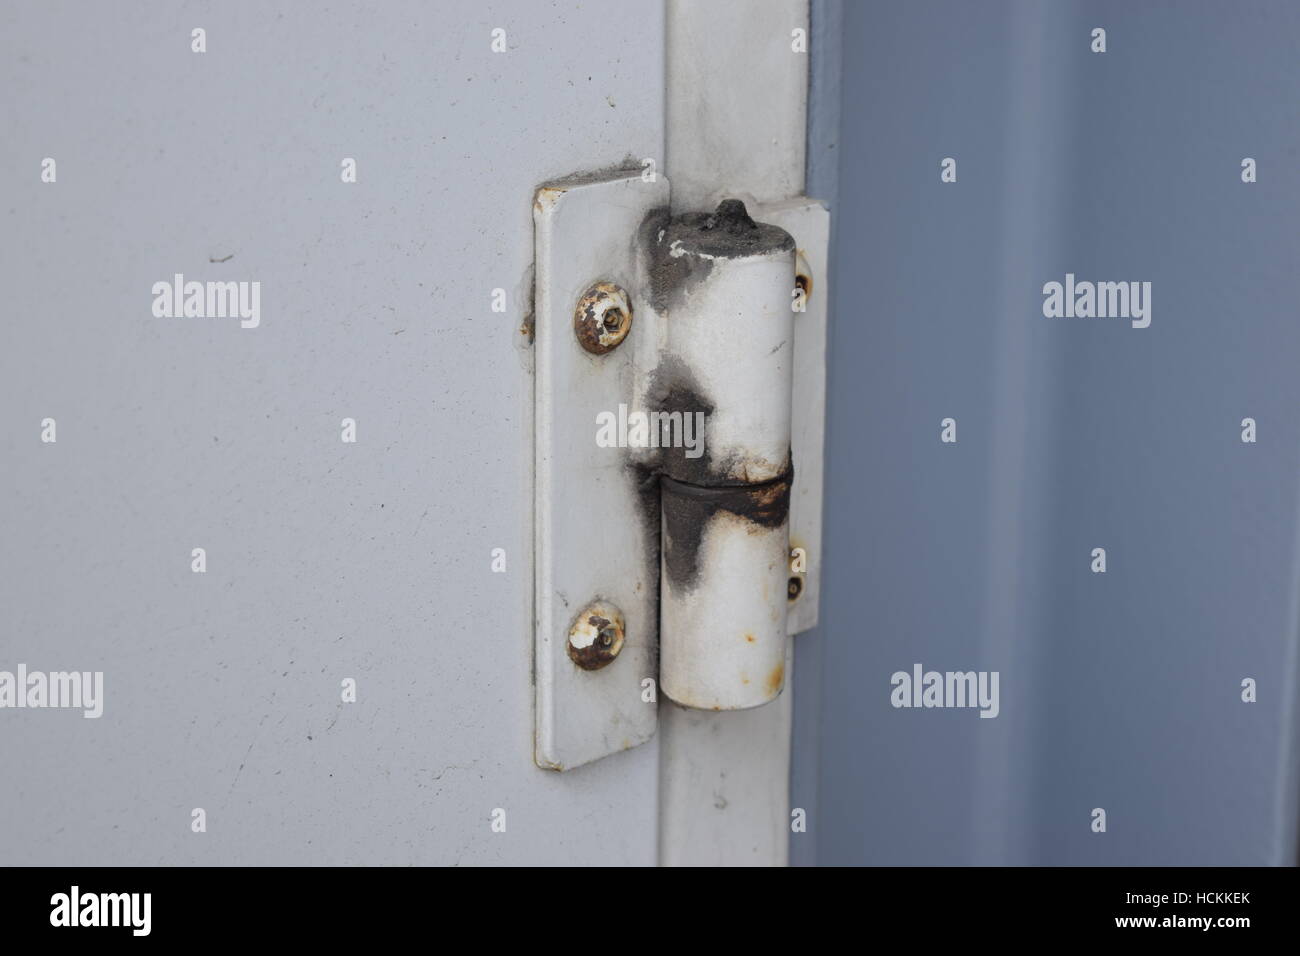 Rusty verwendet schwere Stahltür Scharnier Stockfotografie - Alamy